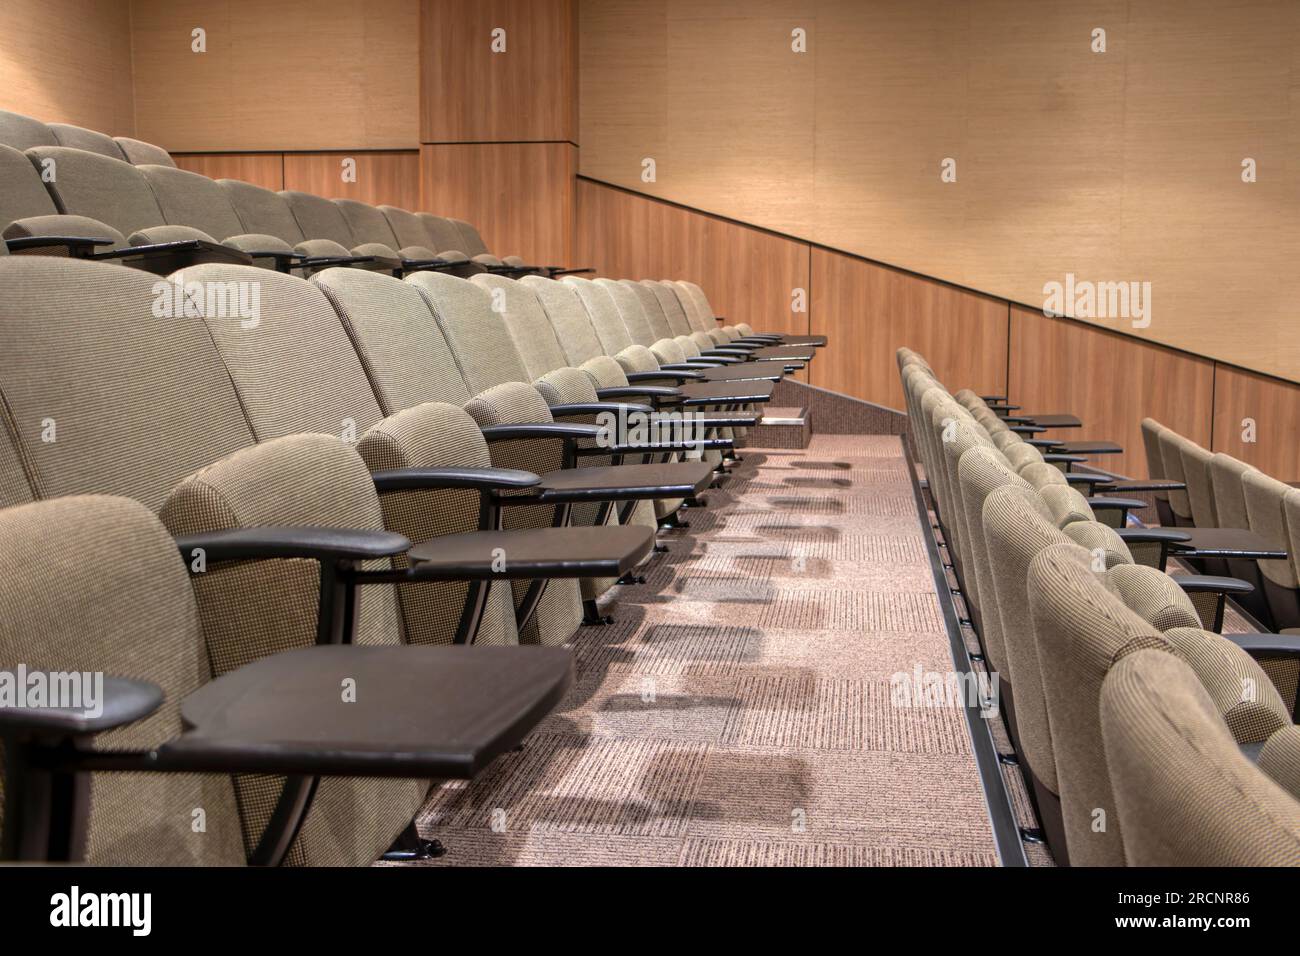 grandi file di sedie vuote con piccoli tavoli laterali in un centro conferenze Foto Stock